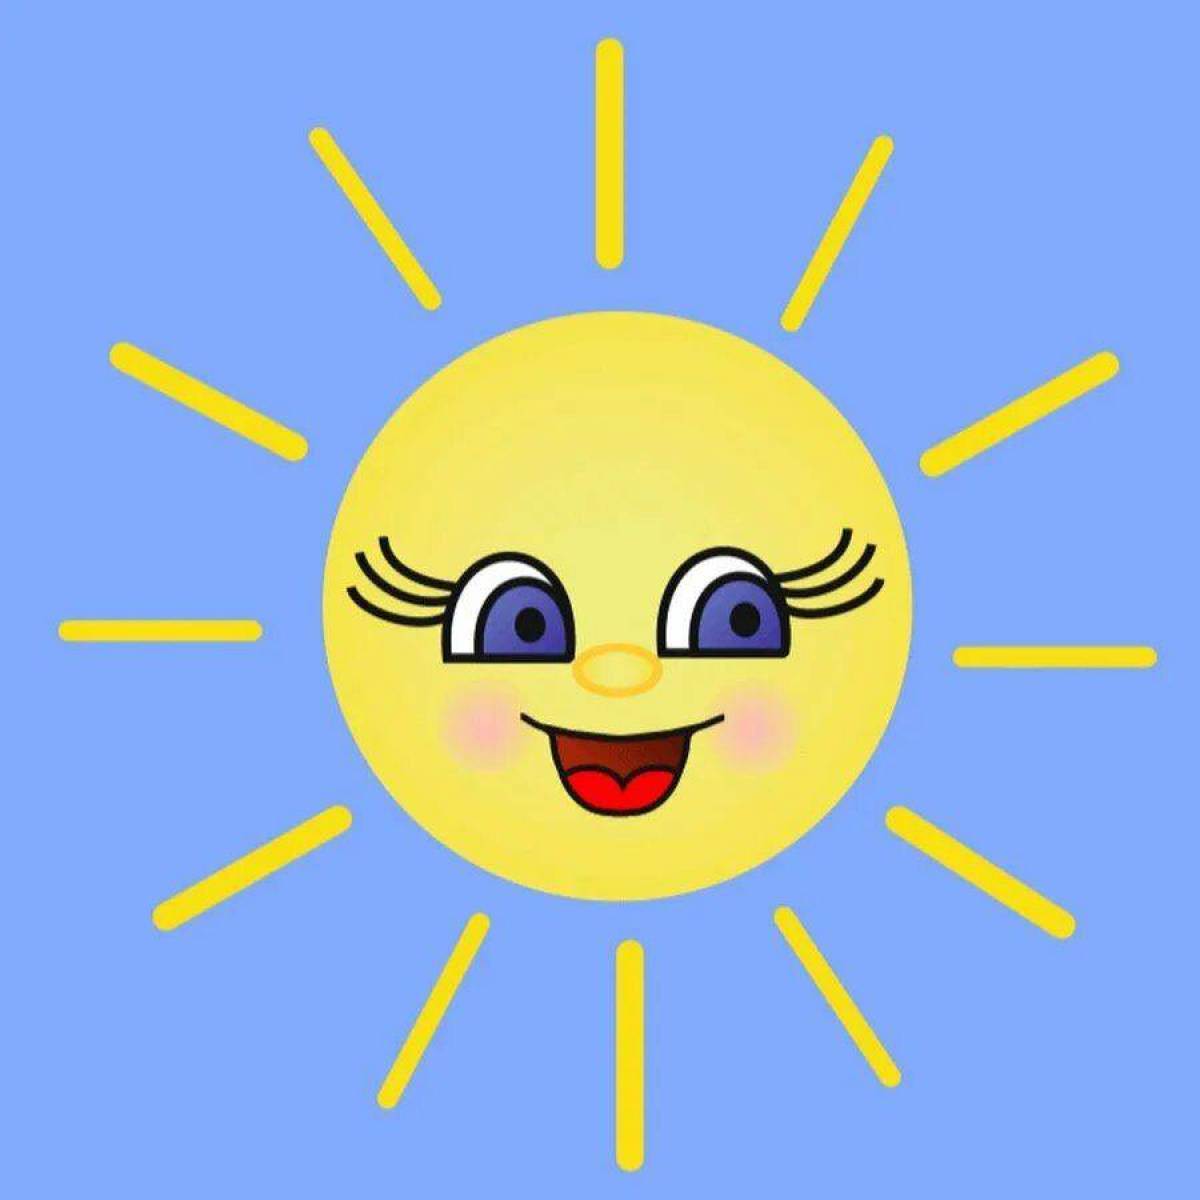 Картинка солнышко. Солнышко рисунок. Солнце рисунок. Веселое солнышко. Солнышко для детей.